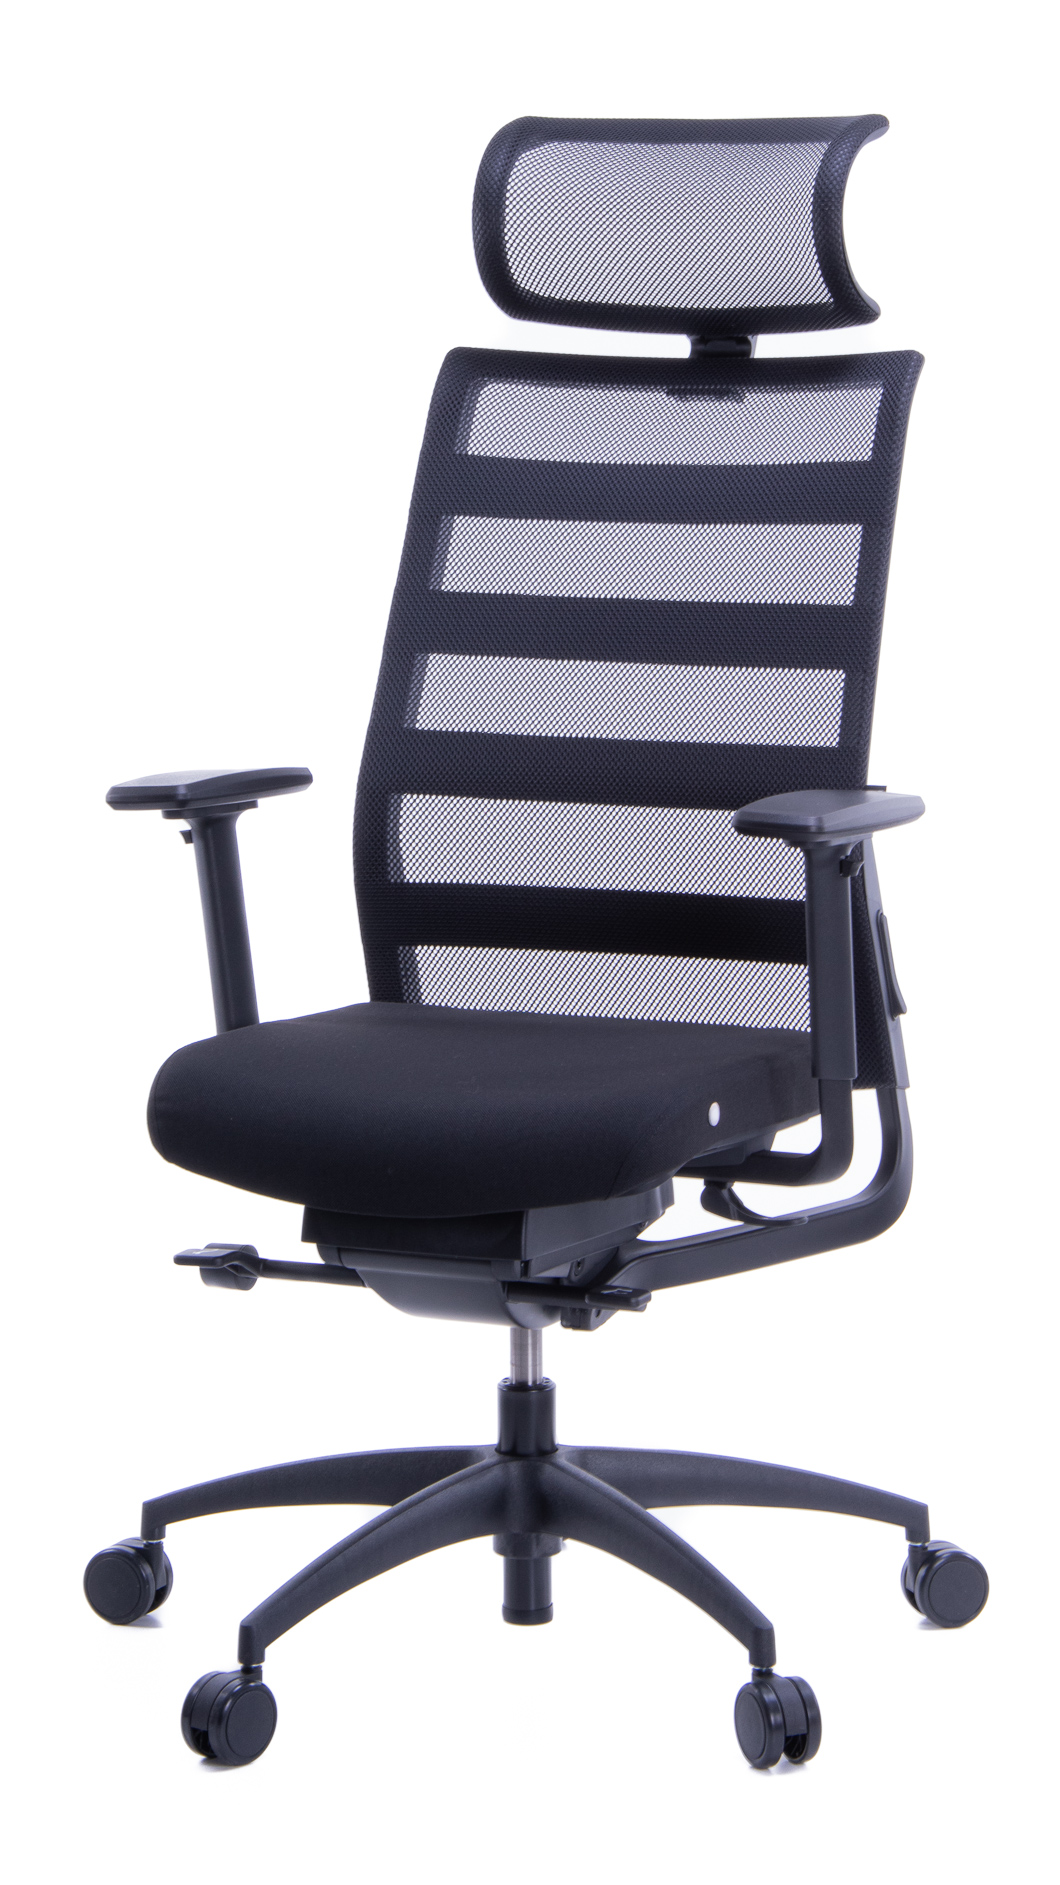 Biuro kėdė | Ergonominė darbo kėdė Ergomedic 100-1 | Vokiška kėdė darbui | Kėdžių centras | Vildika